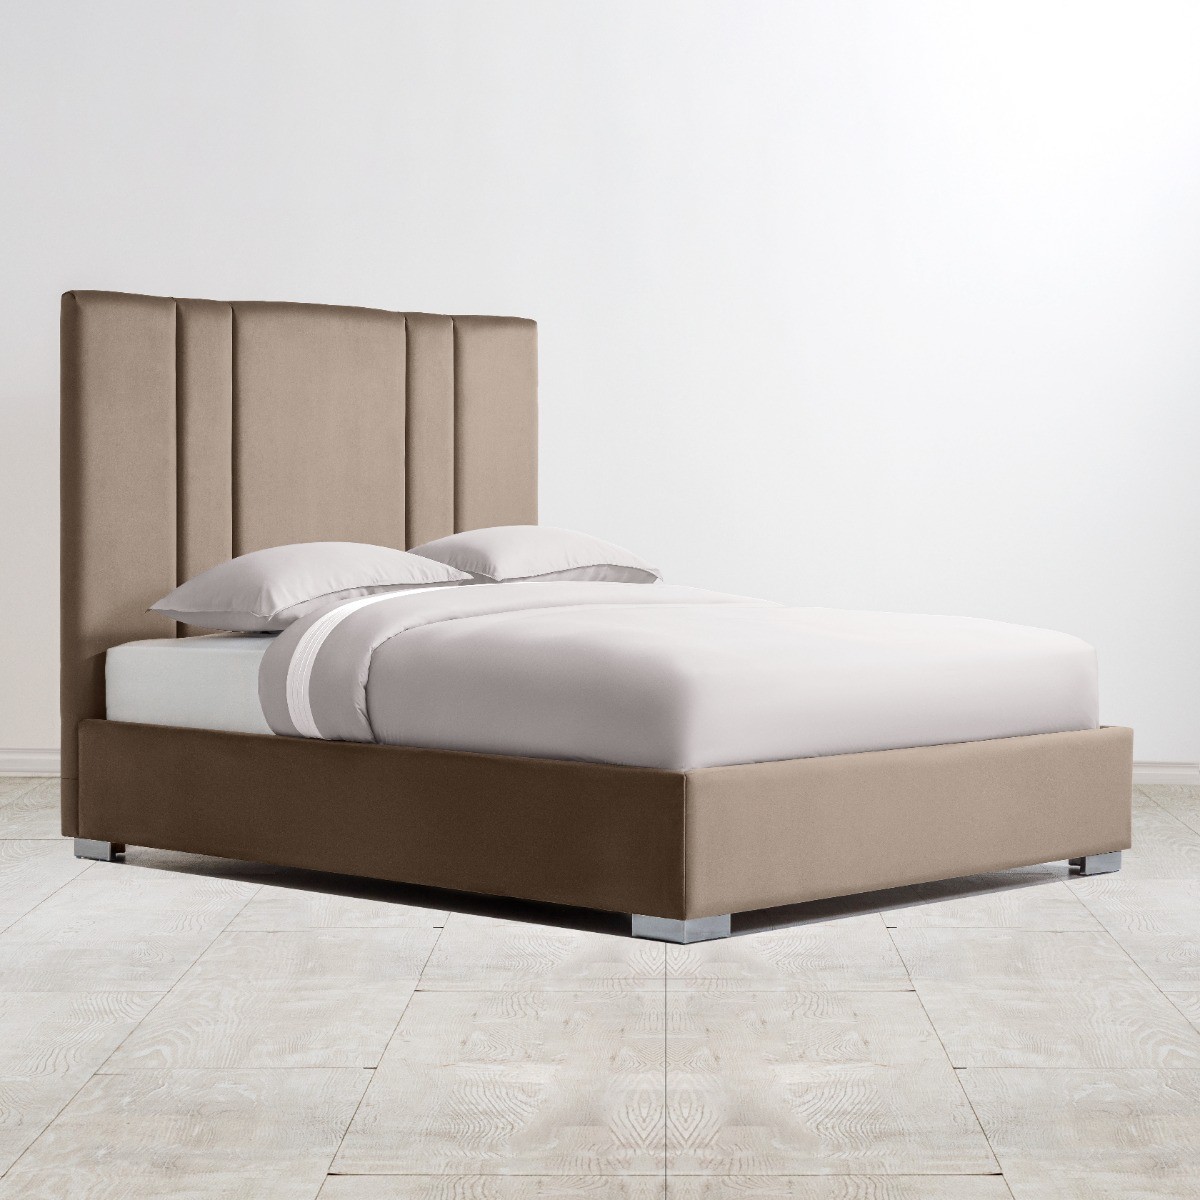  Кровать Тоскан  - Фото